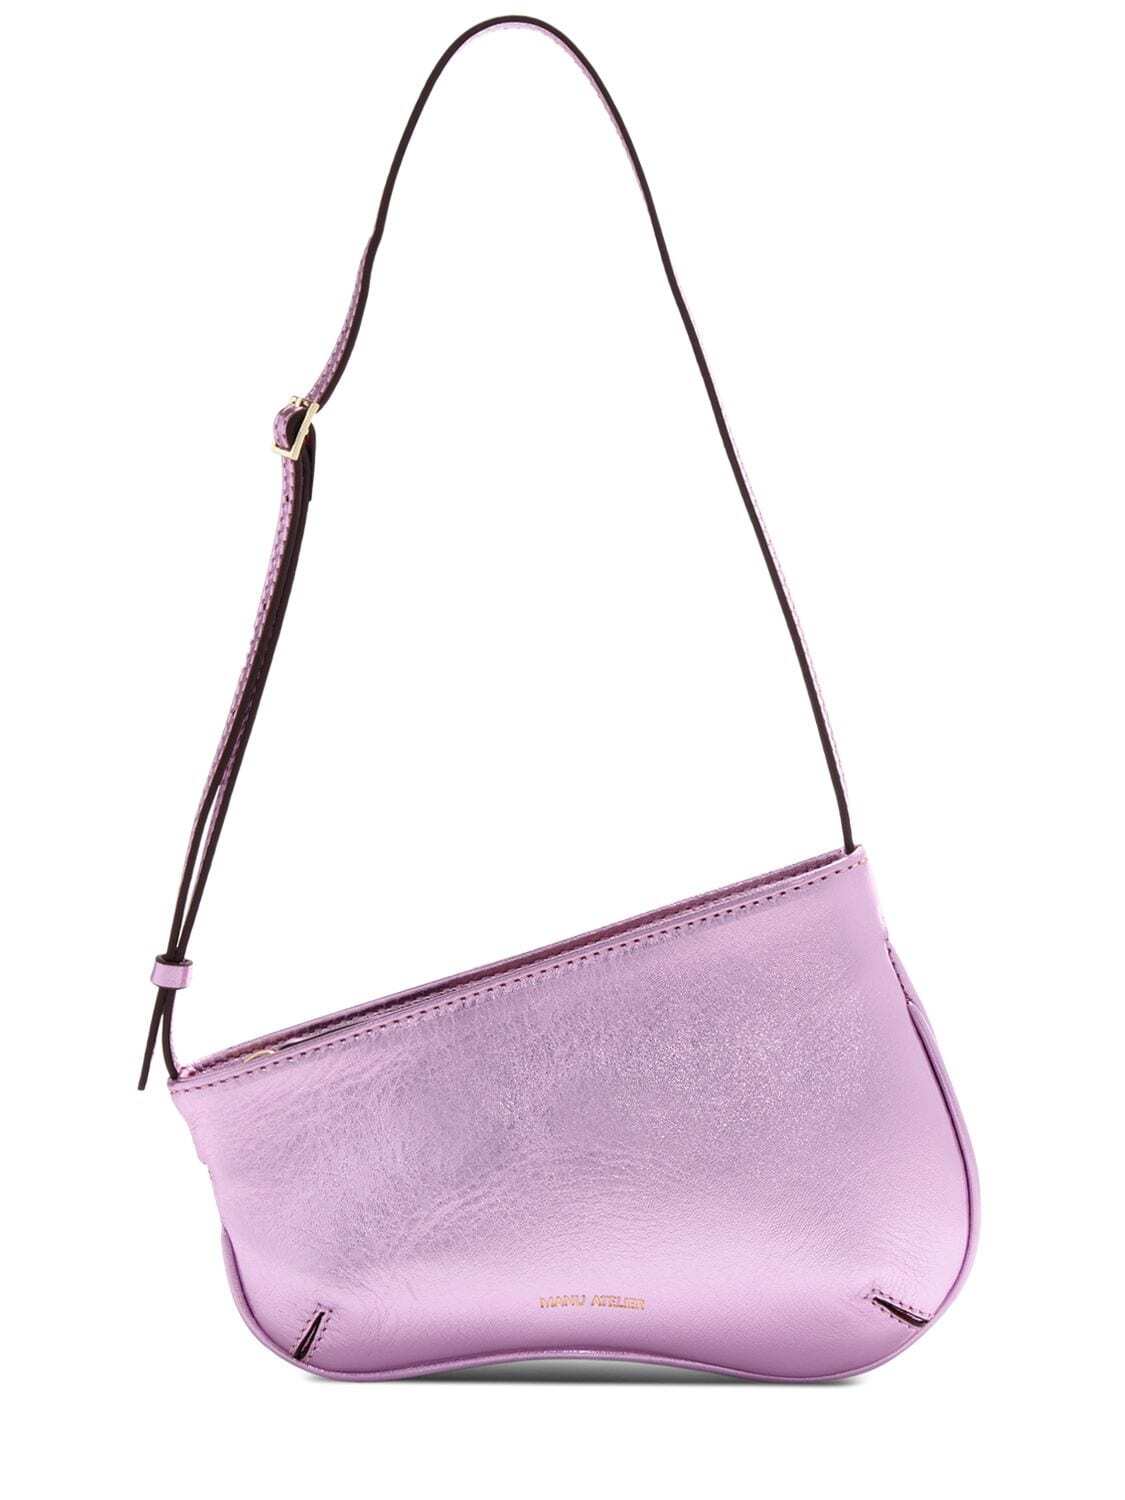 MANU ATELIER Mini Curve Metallic Leather Bag in pink